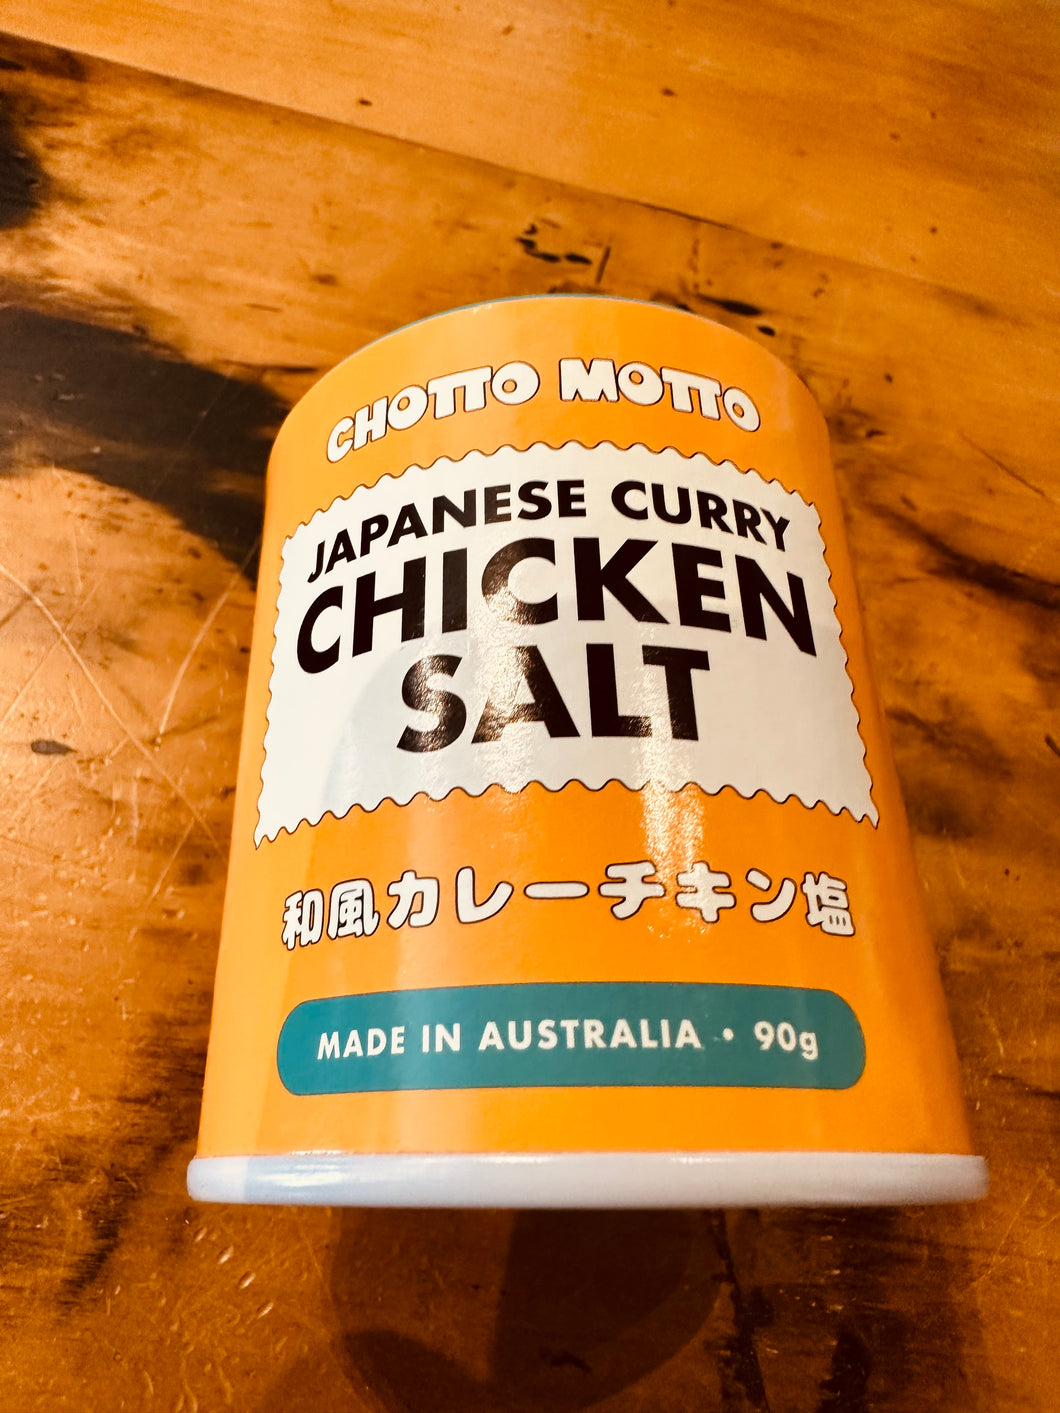 Chotto Motto Japanese Chicken Salt